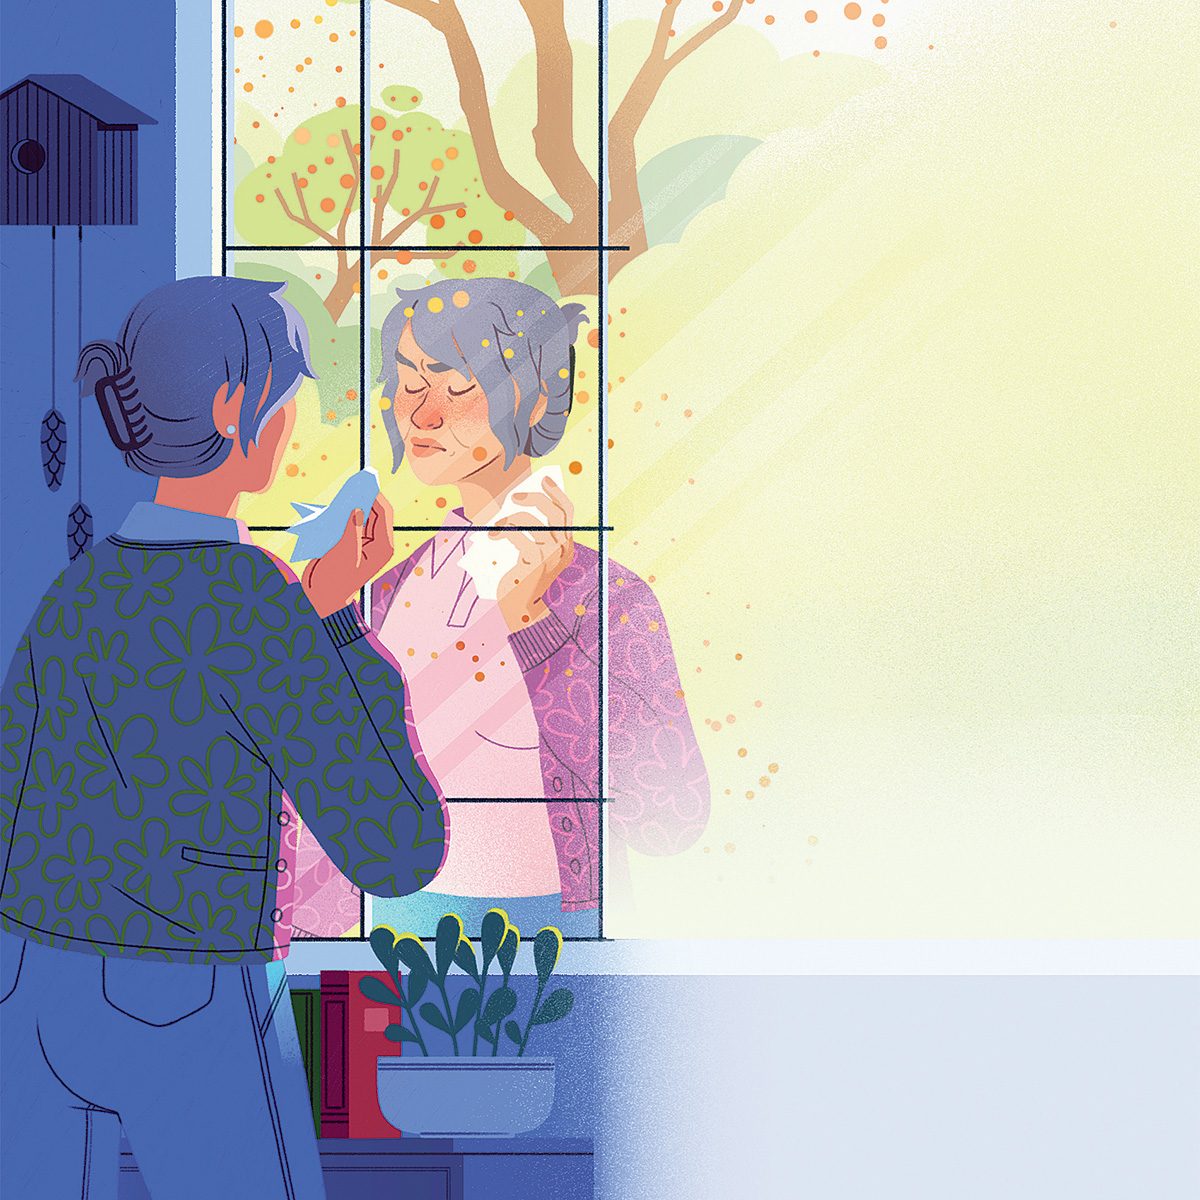 Allergies saisonnières: illustration d'une femme maladie qui voit son reflet dans la fenêtre.